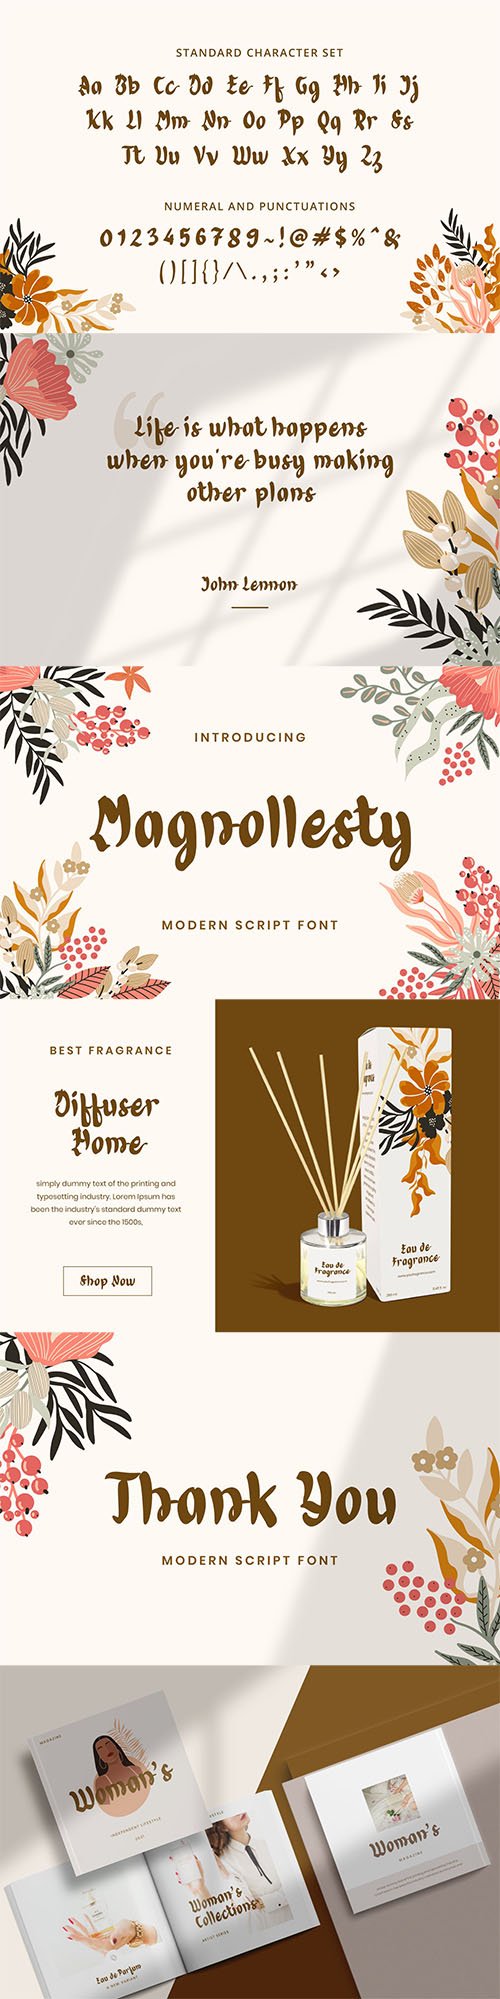 Magnollesty Modern Script Font